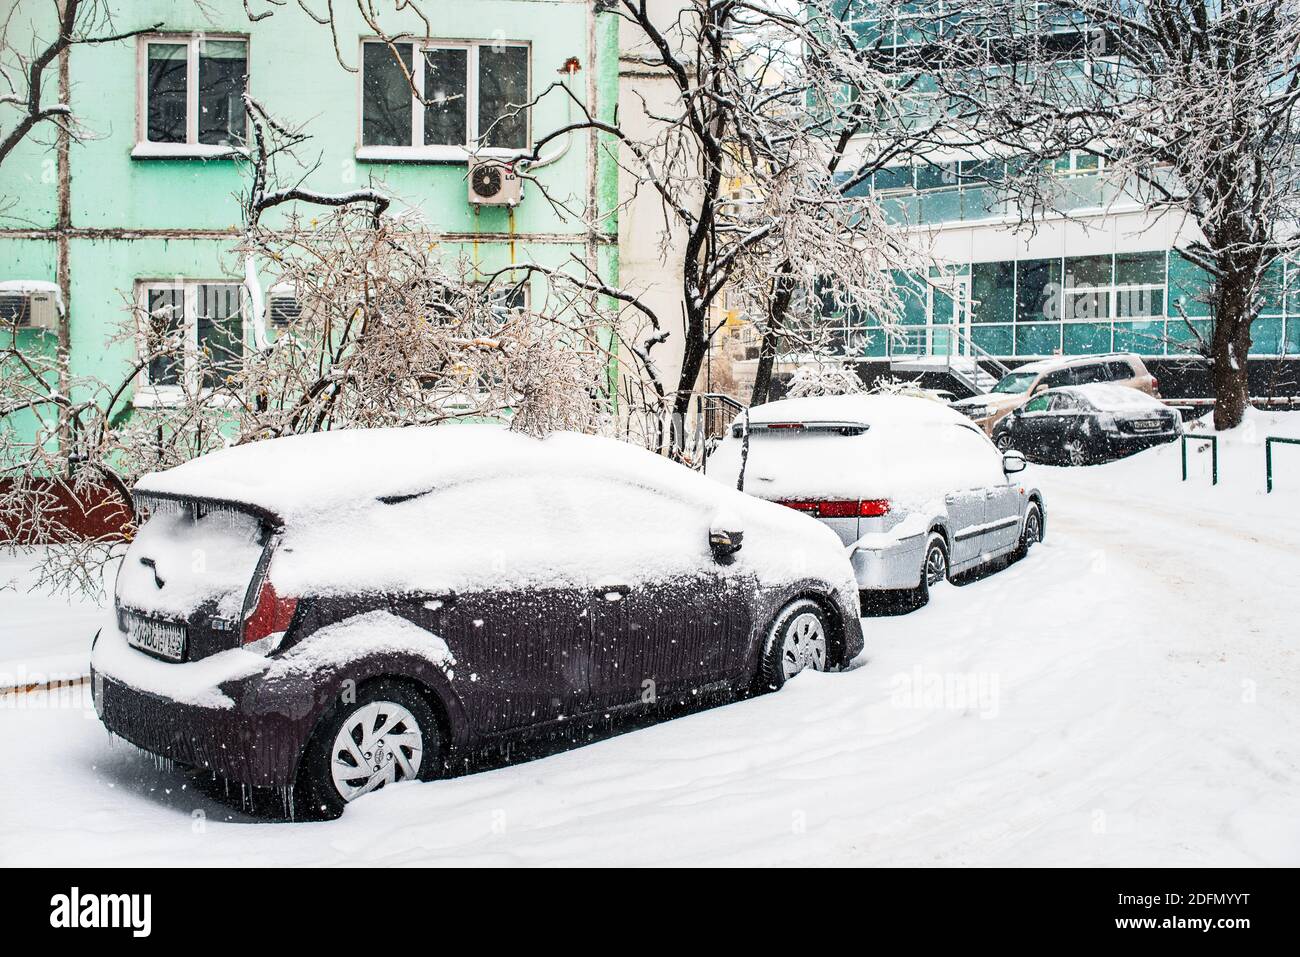 Verschneite Straße. Auto bedeckt mit Eis, Schnee und Eiszapfen. Eissturmzyklon. Winter frostiges Wetter. Stockfoto